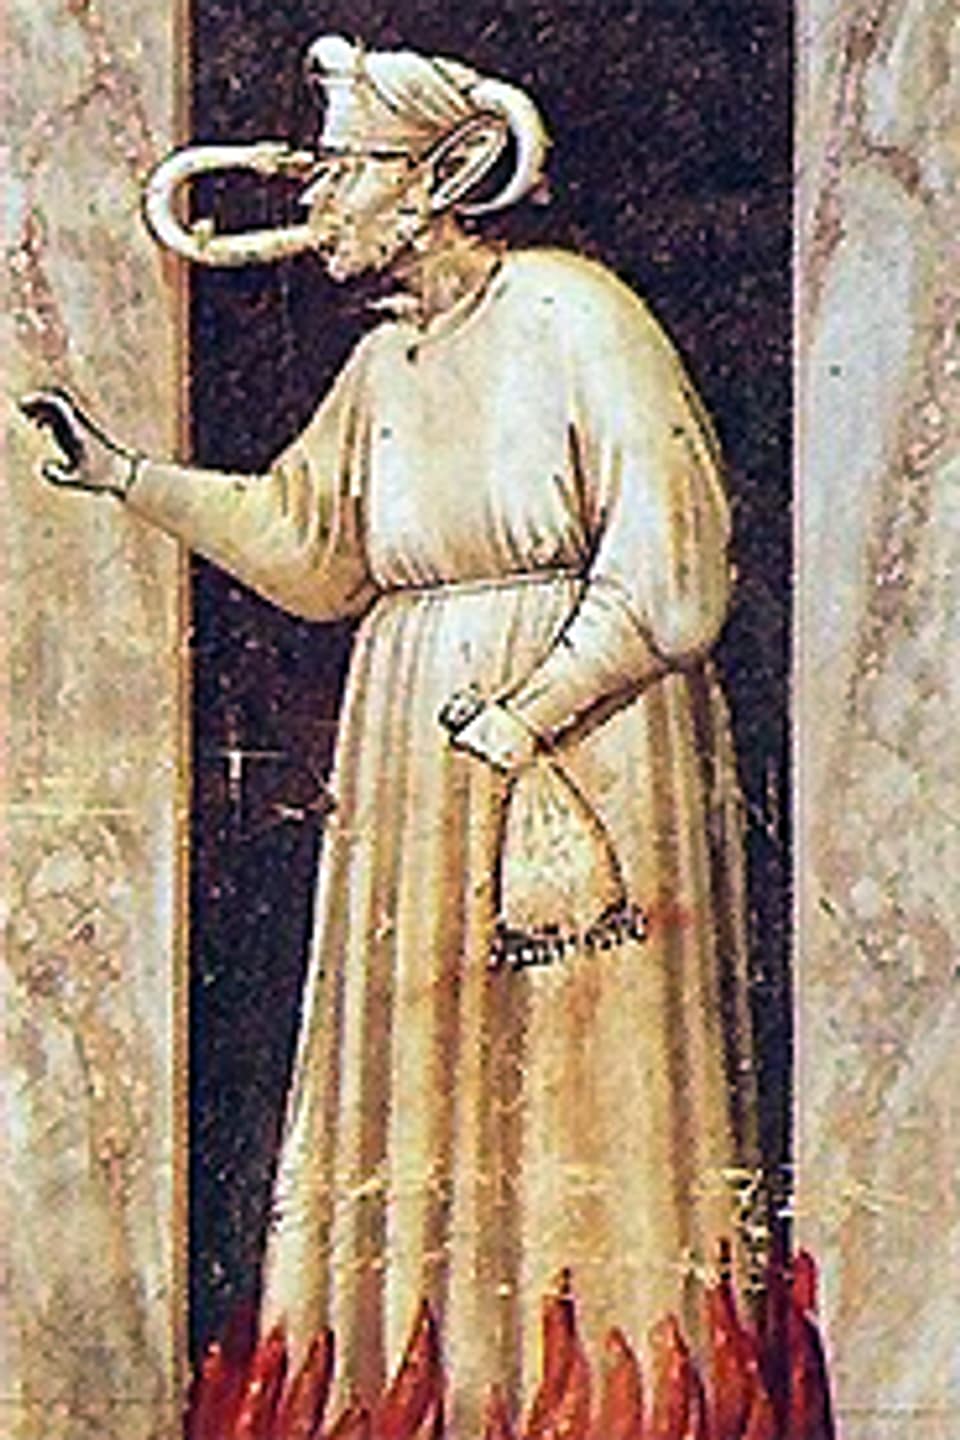 Eine der sieben Todsünden: Neid, gemalt von Giotto di Bondone.